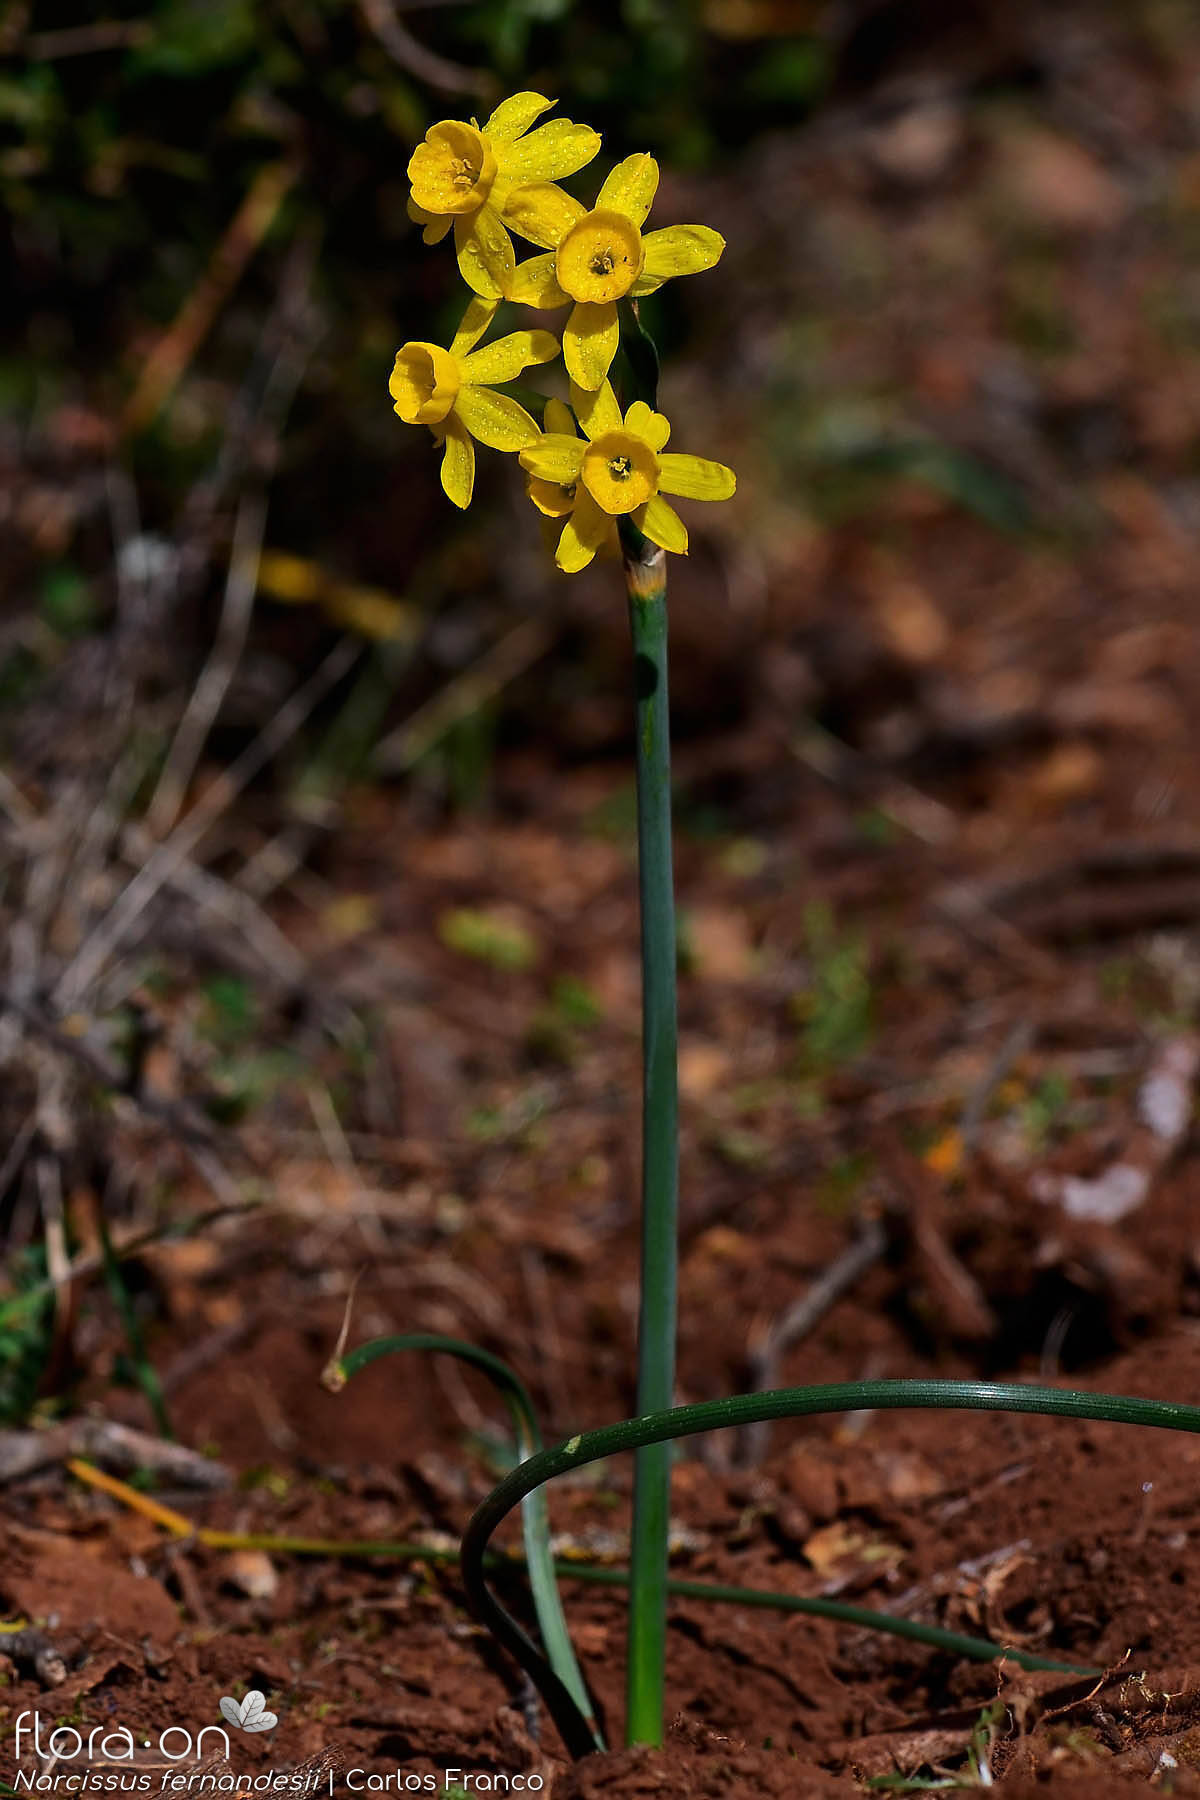 Narcissus fernandesii - Hábito | Carlos Franco; CC BY-NC 4.0